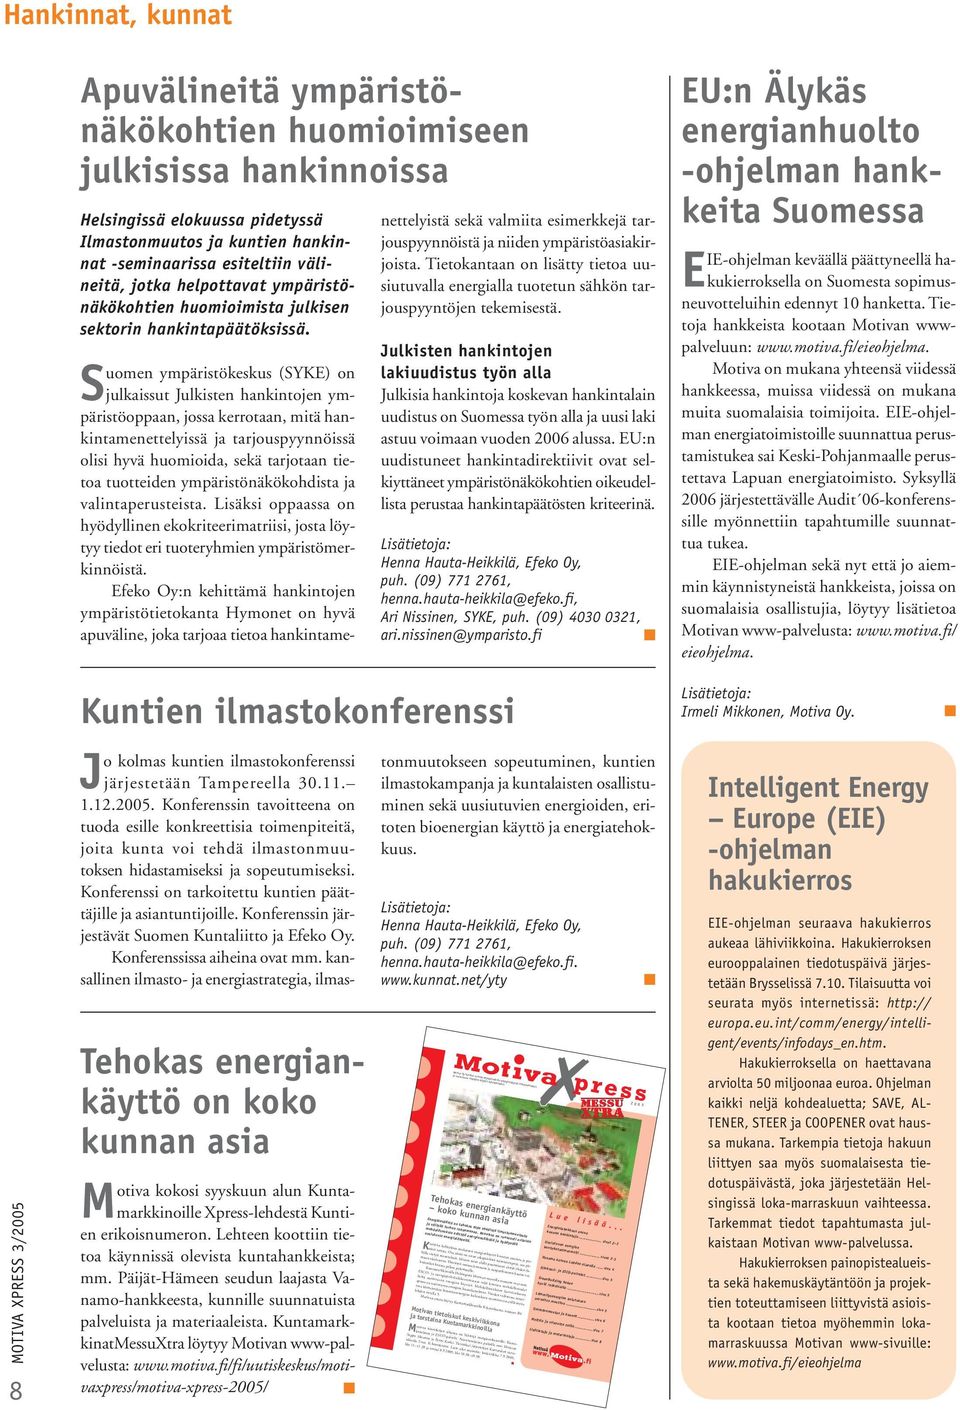 Suomen ympäristökeskus (SYKE) on julkaissut Julkisten hankintojen ympäristöoppaan, jossa kerrotaan, mitä hankintamenettelyissä ja tarjouspyynnöissä olisi hyvä huomioida, sekä tarjotaan tietoa